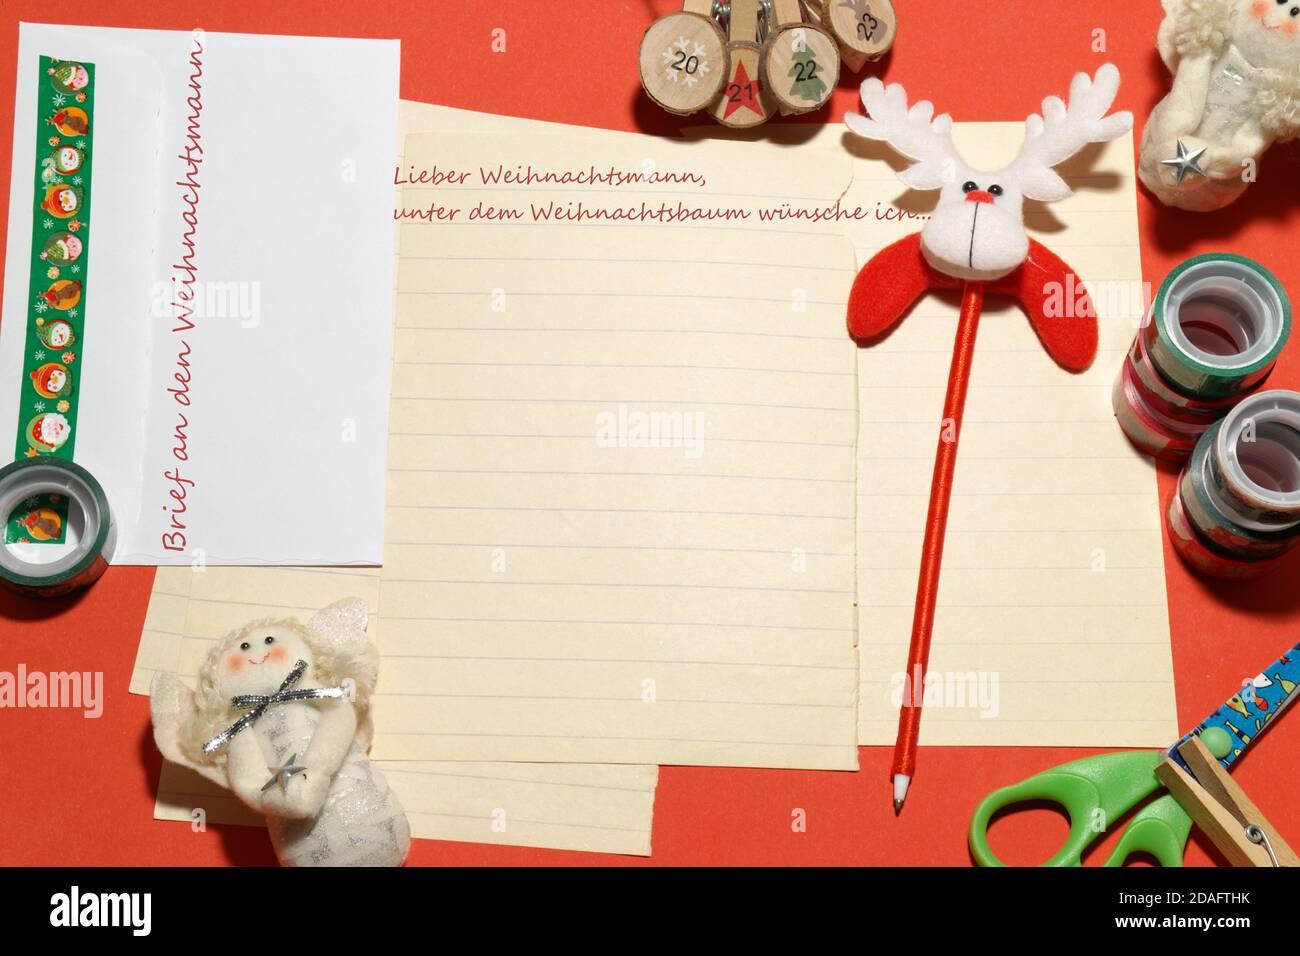 Brief, Grußkarte an den Weihnachtsmann in deutscher Sprache. Übersetzung des spanischen Textes ist: Brief an den Weihnachtsmann. Lieber Weihnachtsmann, unter dem Weihnachtsbaum wünsche ich mir... Stockfoto